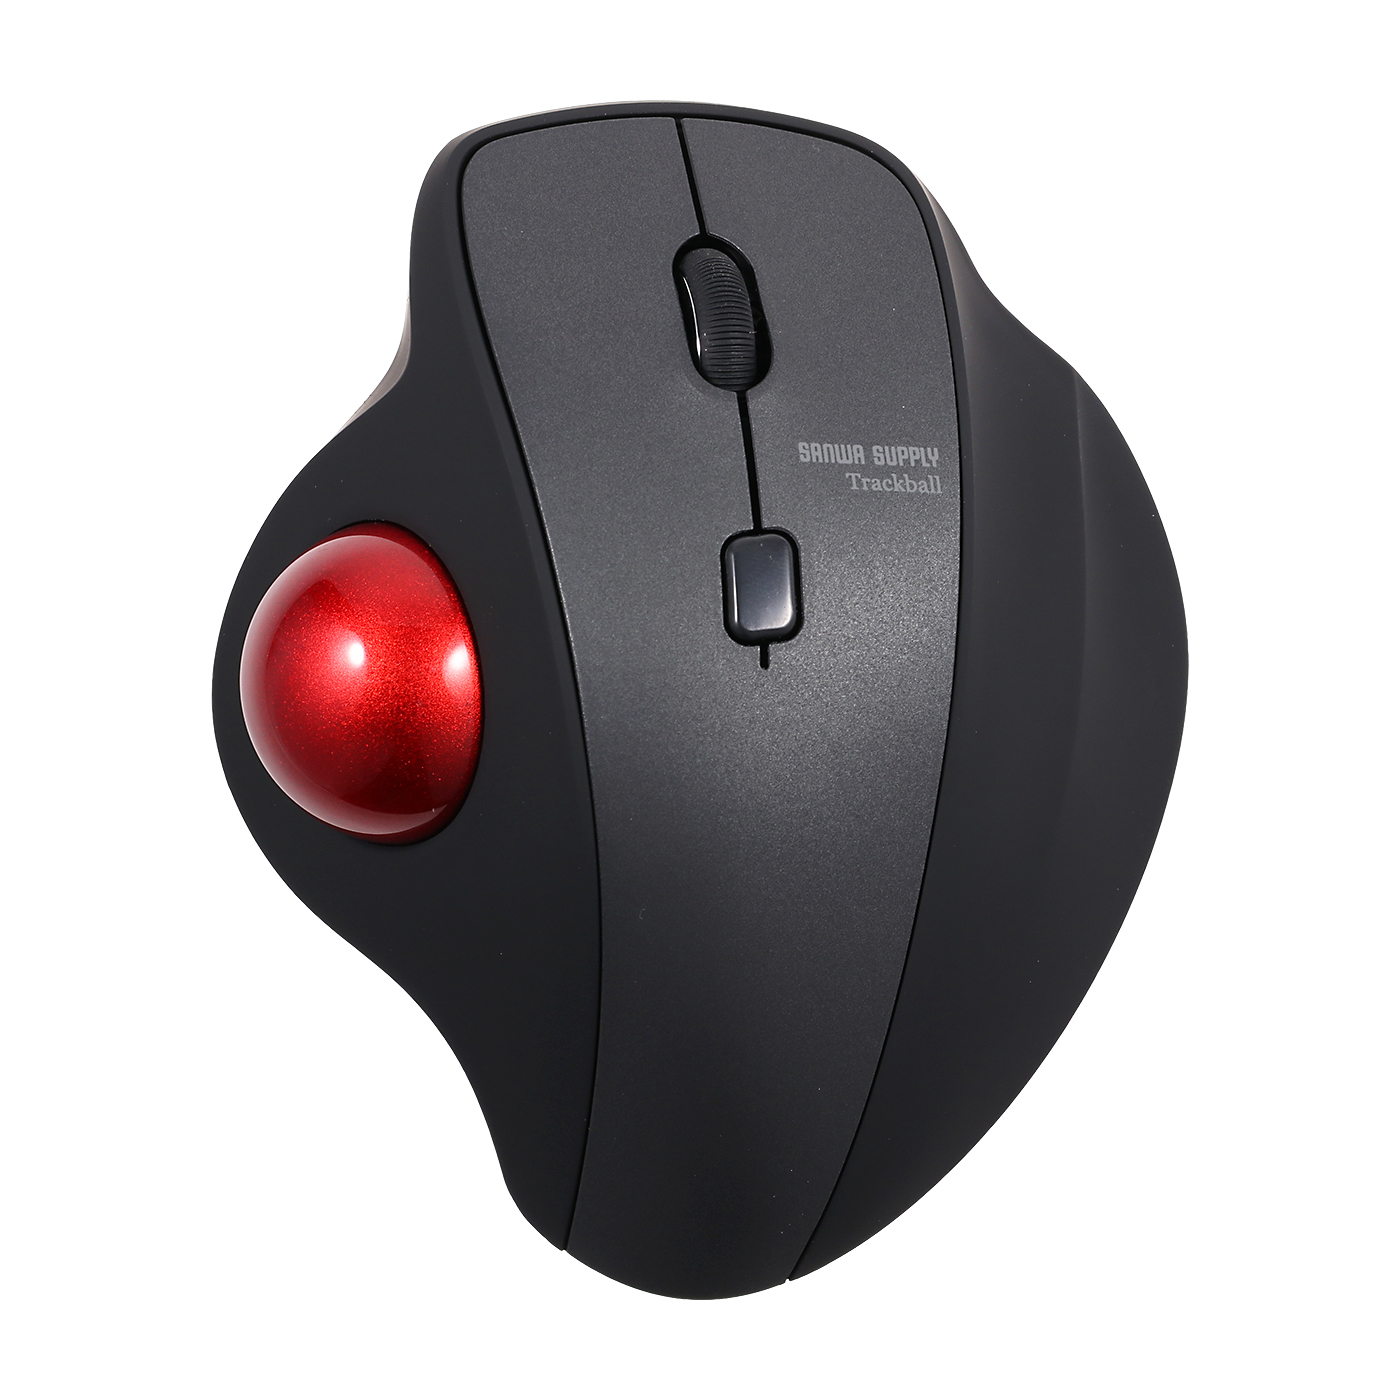 トラックボール ワイヤレス Bluetooth&2.4GHz ダブルモード 瞬時接続 トラックボールマウス 親指 節電